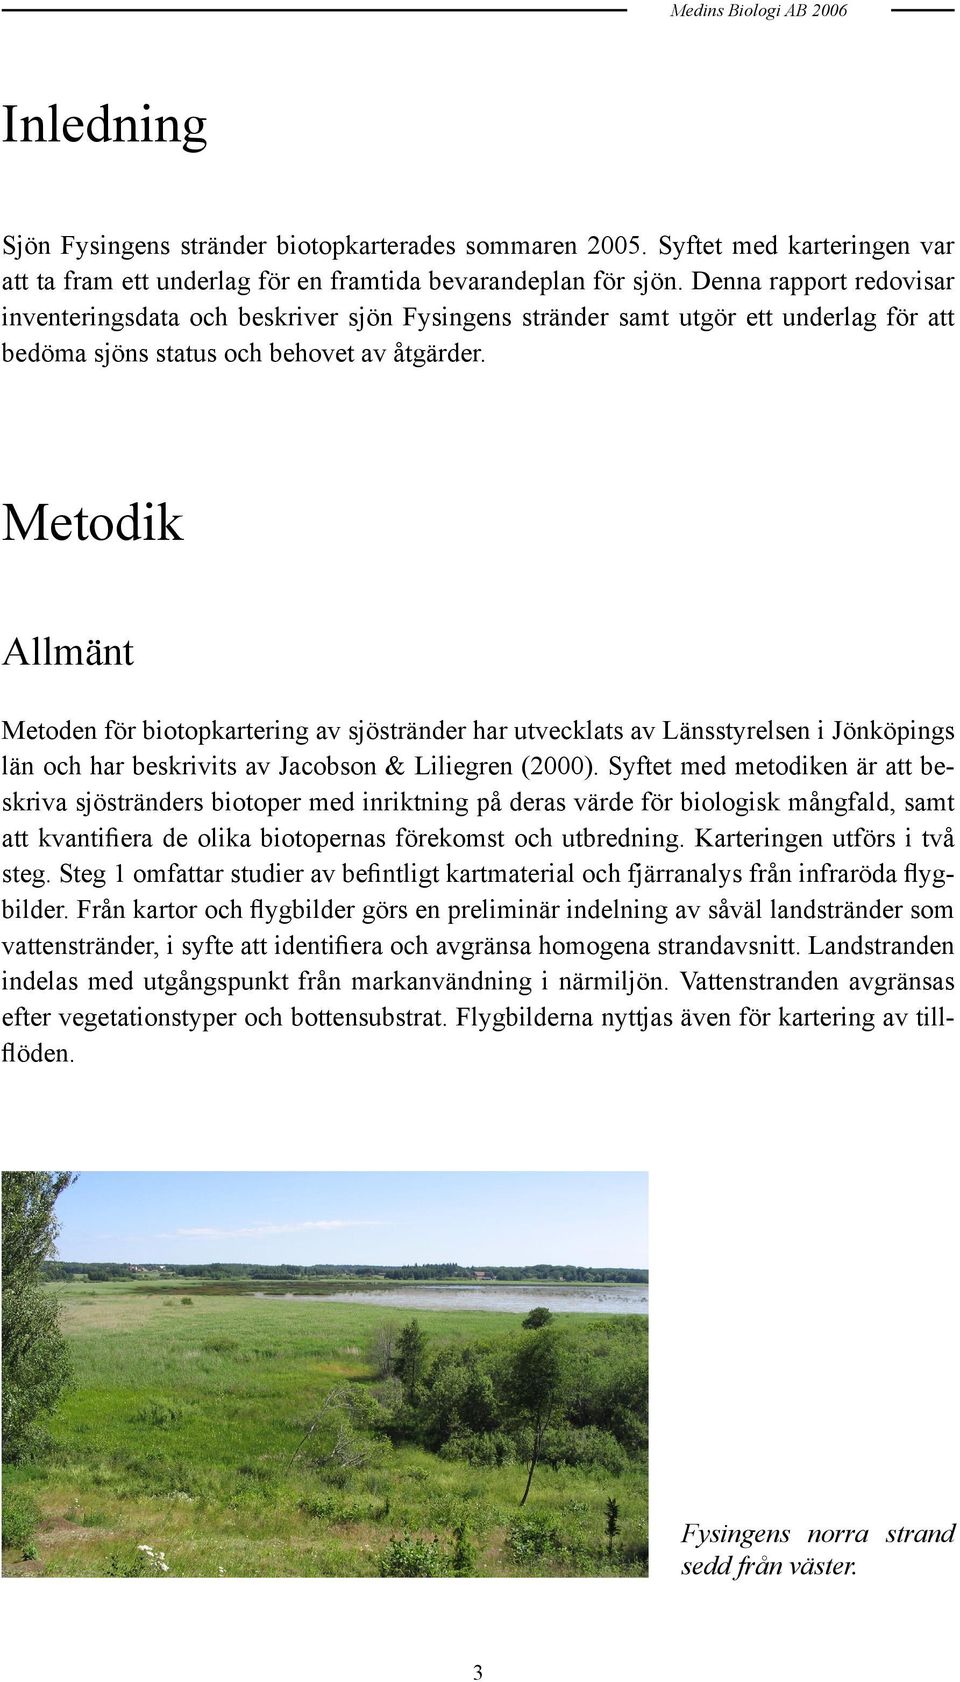 Metodik Allmänt Metoden för biotopkartering av sjöstränder har utvecklats av Länsstyrelsen i Jönköpings län och har beskrivits av Jacobson & Liliegren (2000).